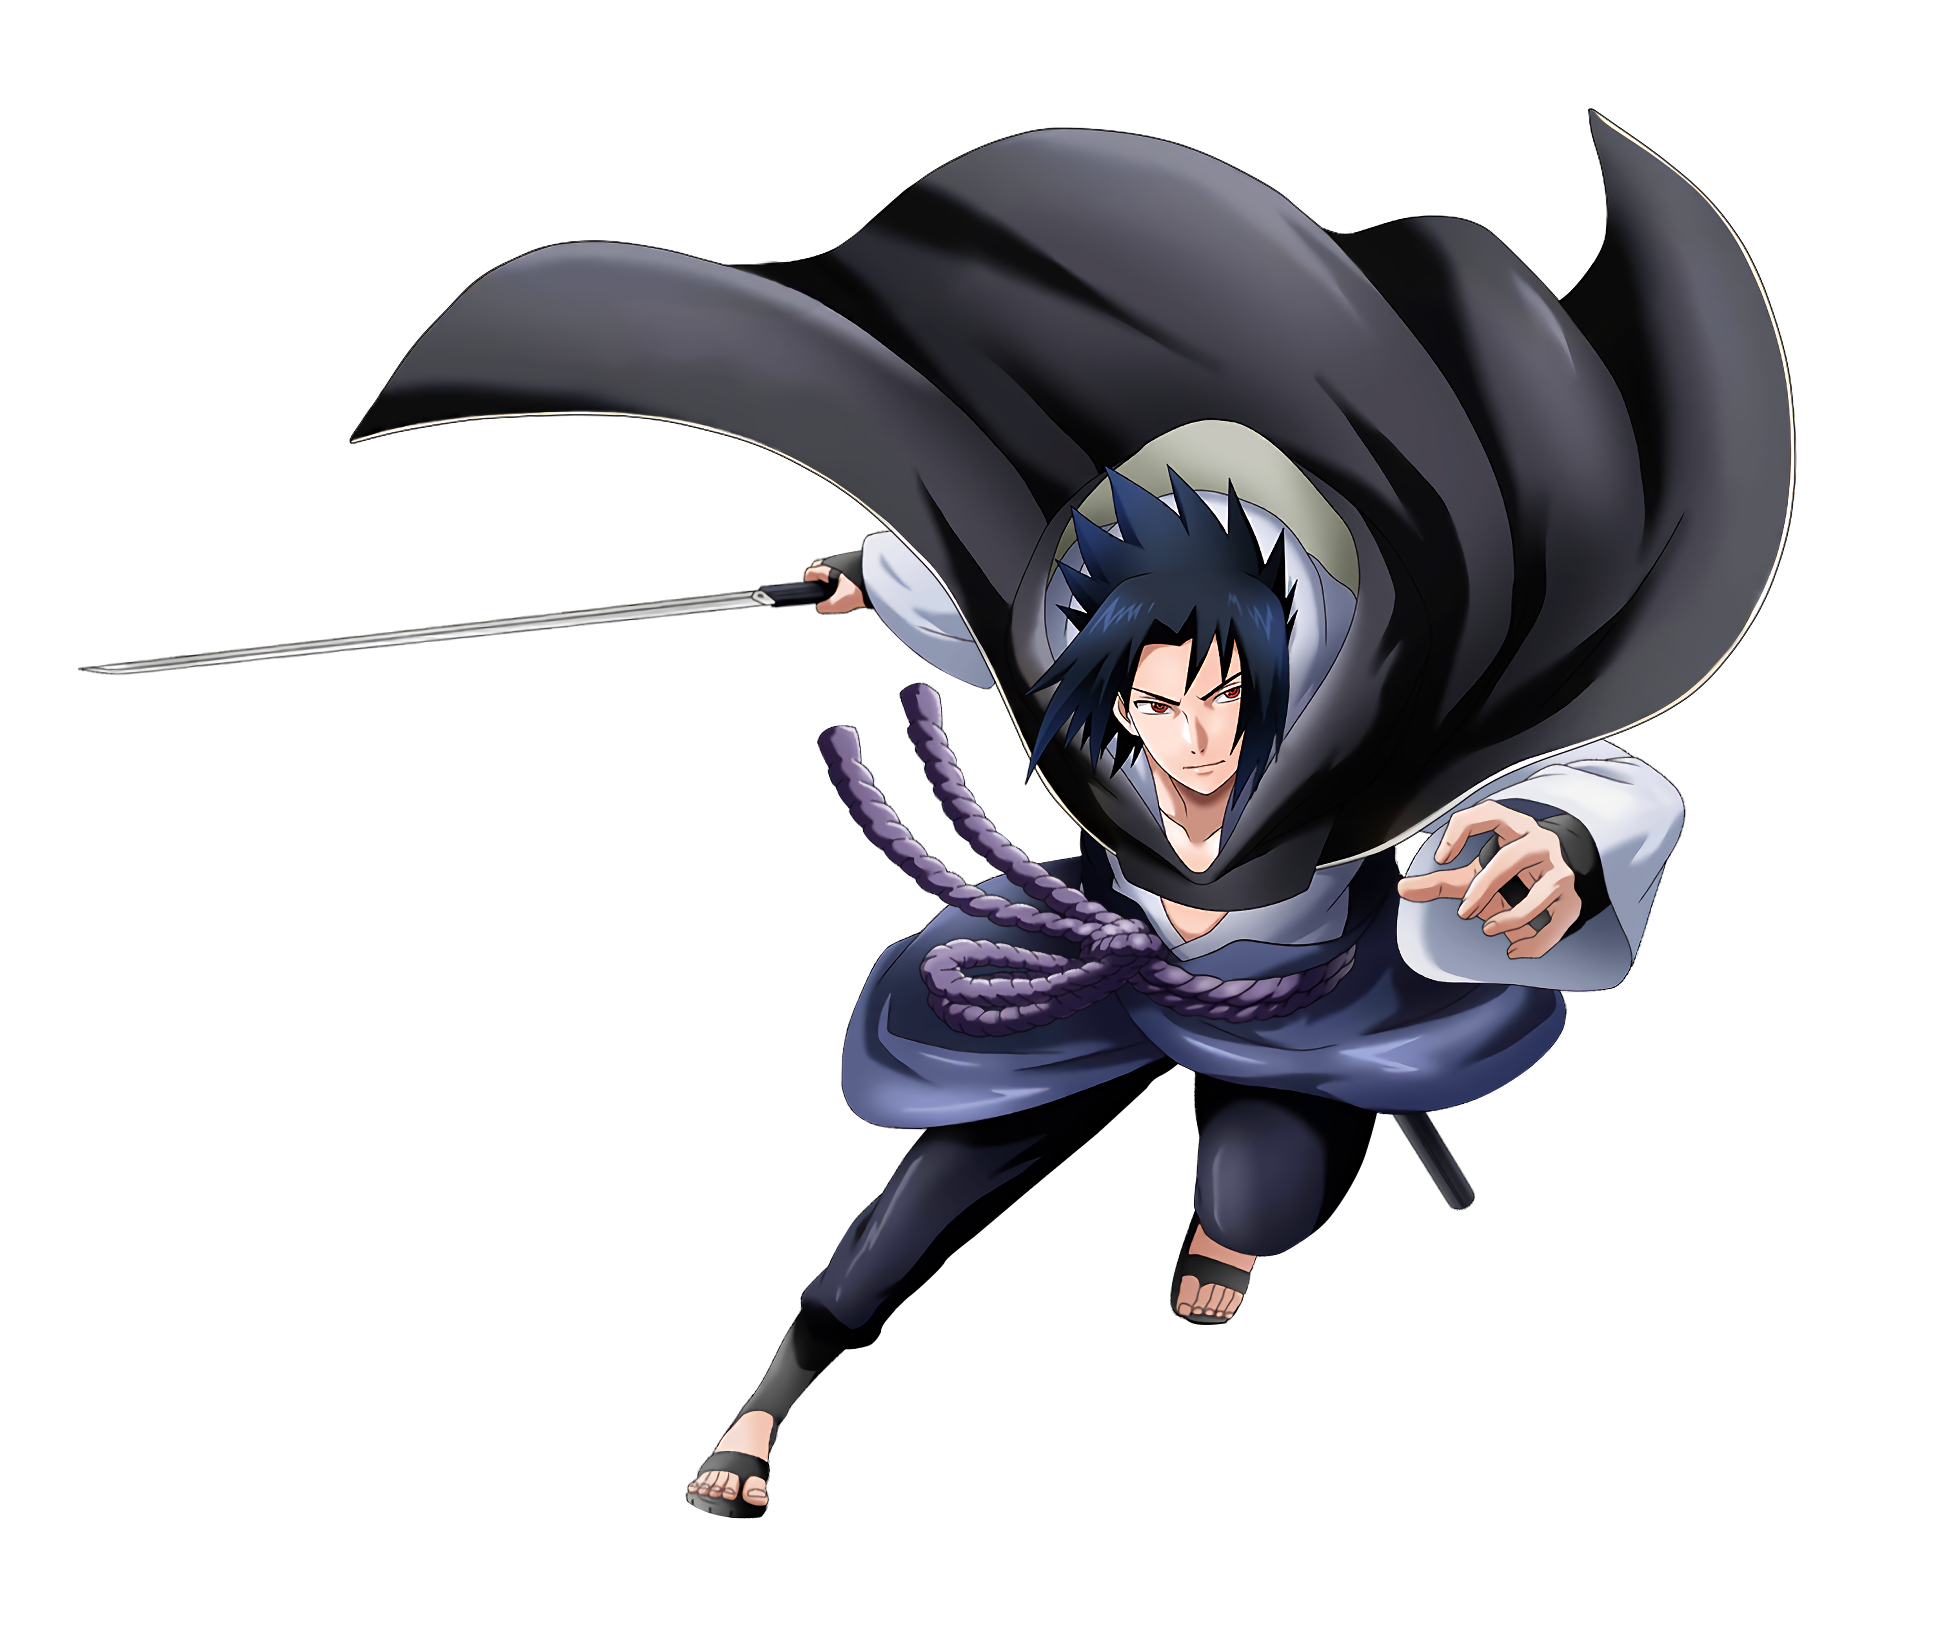 Sasuke Uchiha render [Ultimate Ninja 5] by Maxiuchiha22 on DeviantArt